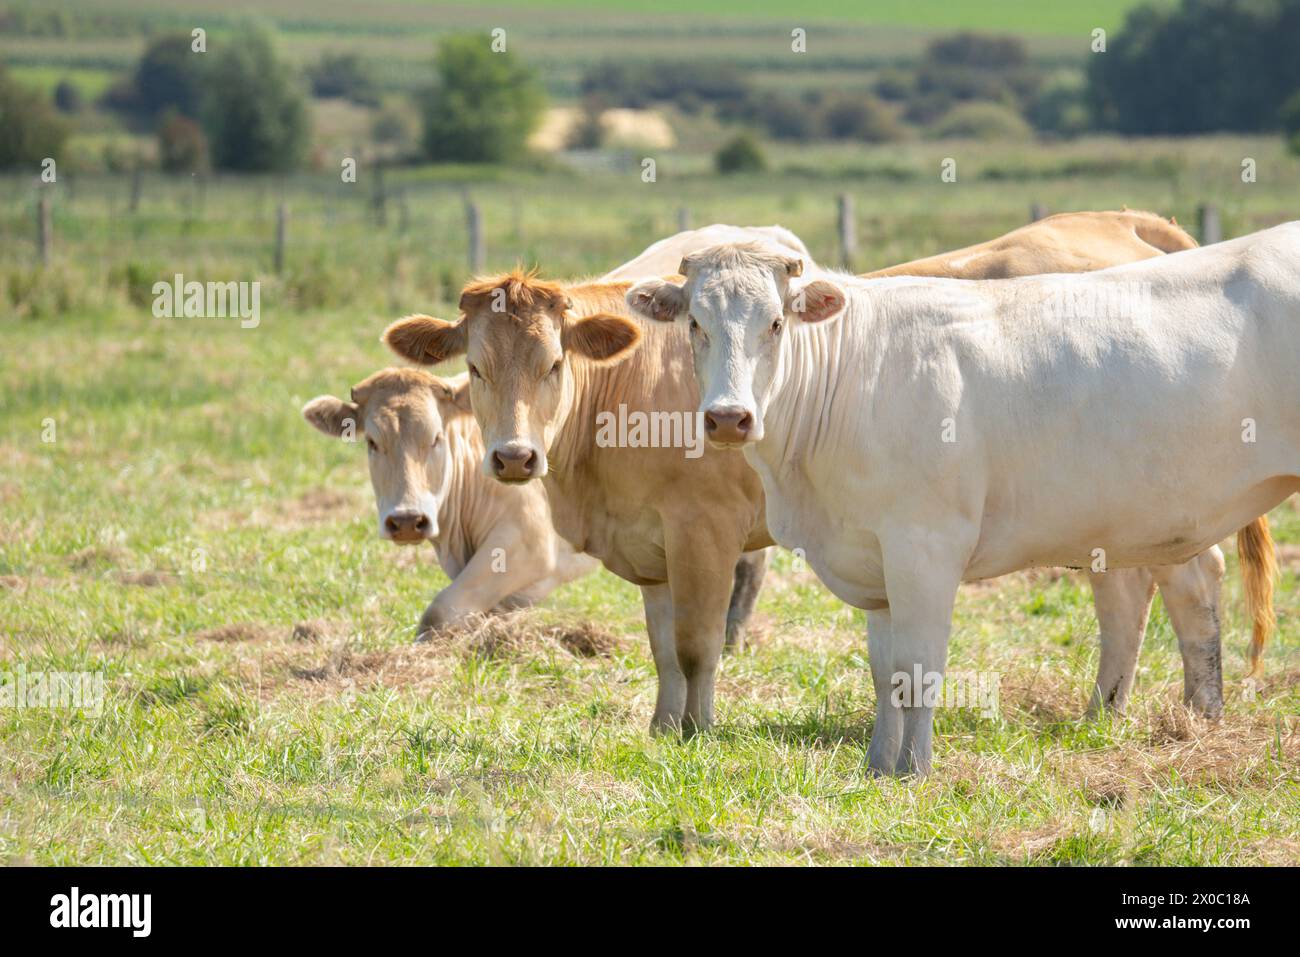 Trois vaches charolaises françaises regardant la caméra dans un champ Banque D'Images